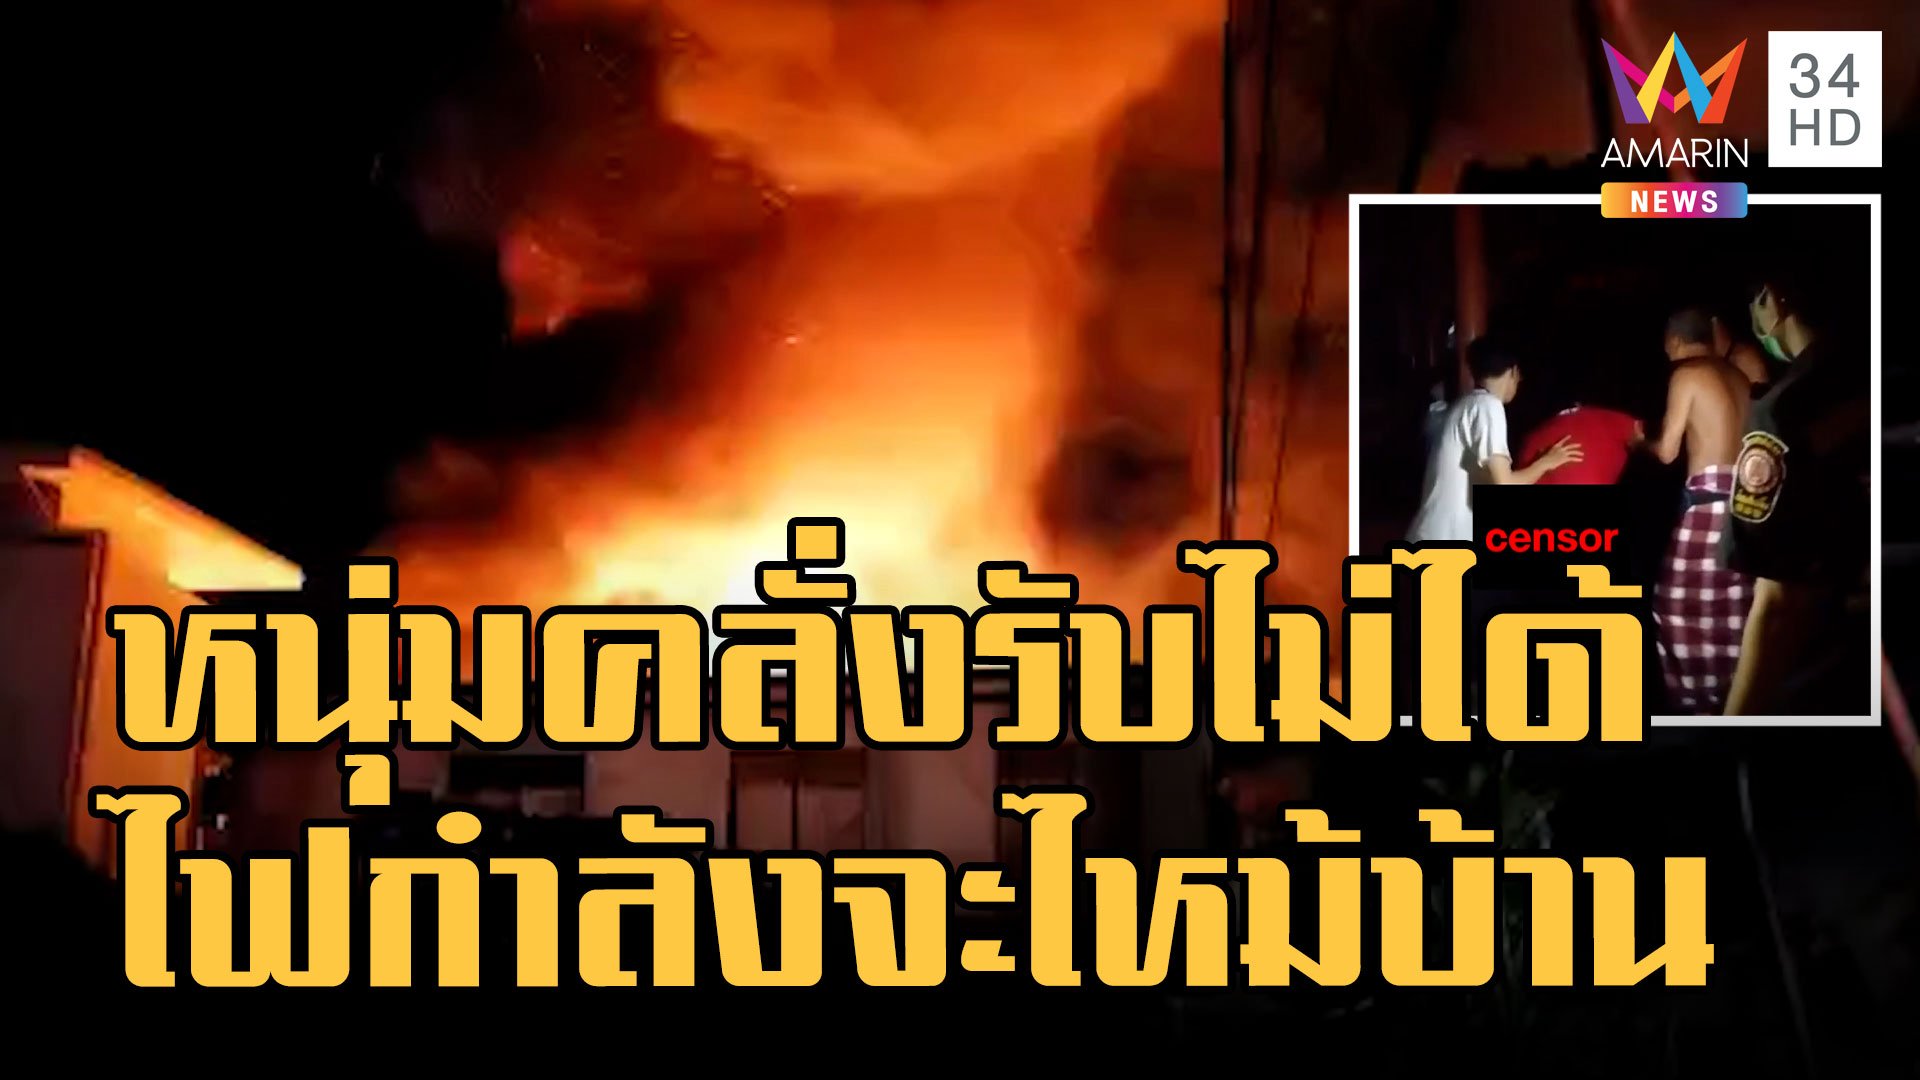  หนุ่มคลั่งบ้านไฟไหม้ วิ่งฝ่ากองเพลิงเข้าบ้านตัวเอง | ข่าวเที่ยงอมรินทร์ | 1 ต.ค. 65 | AMARIN TVHD34